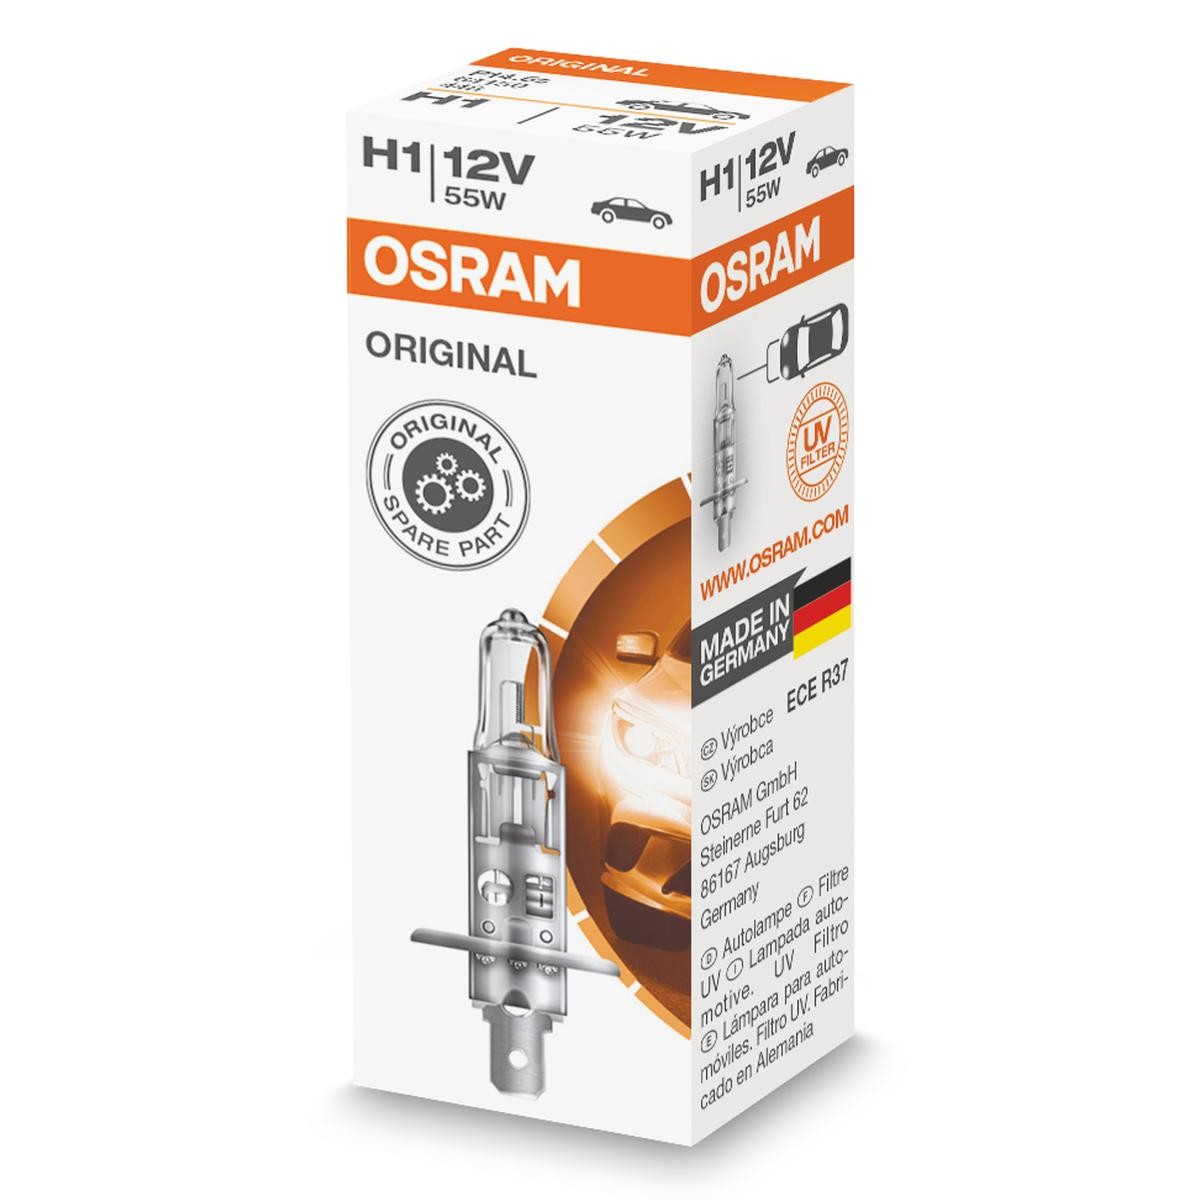 H1 OSRAM ORIGINAL H1 12V 55W P14,5s 3200K Halogen Glühlampe, Fernscheinwerfer 64150 günstig kaufen